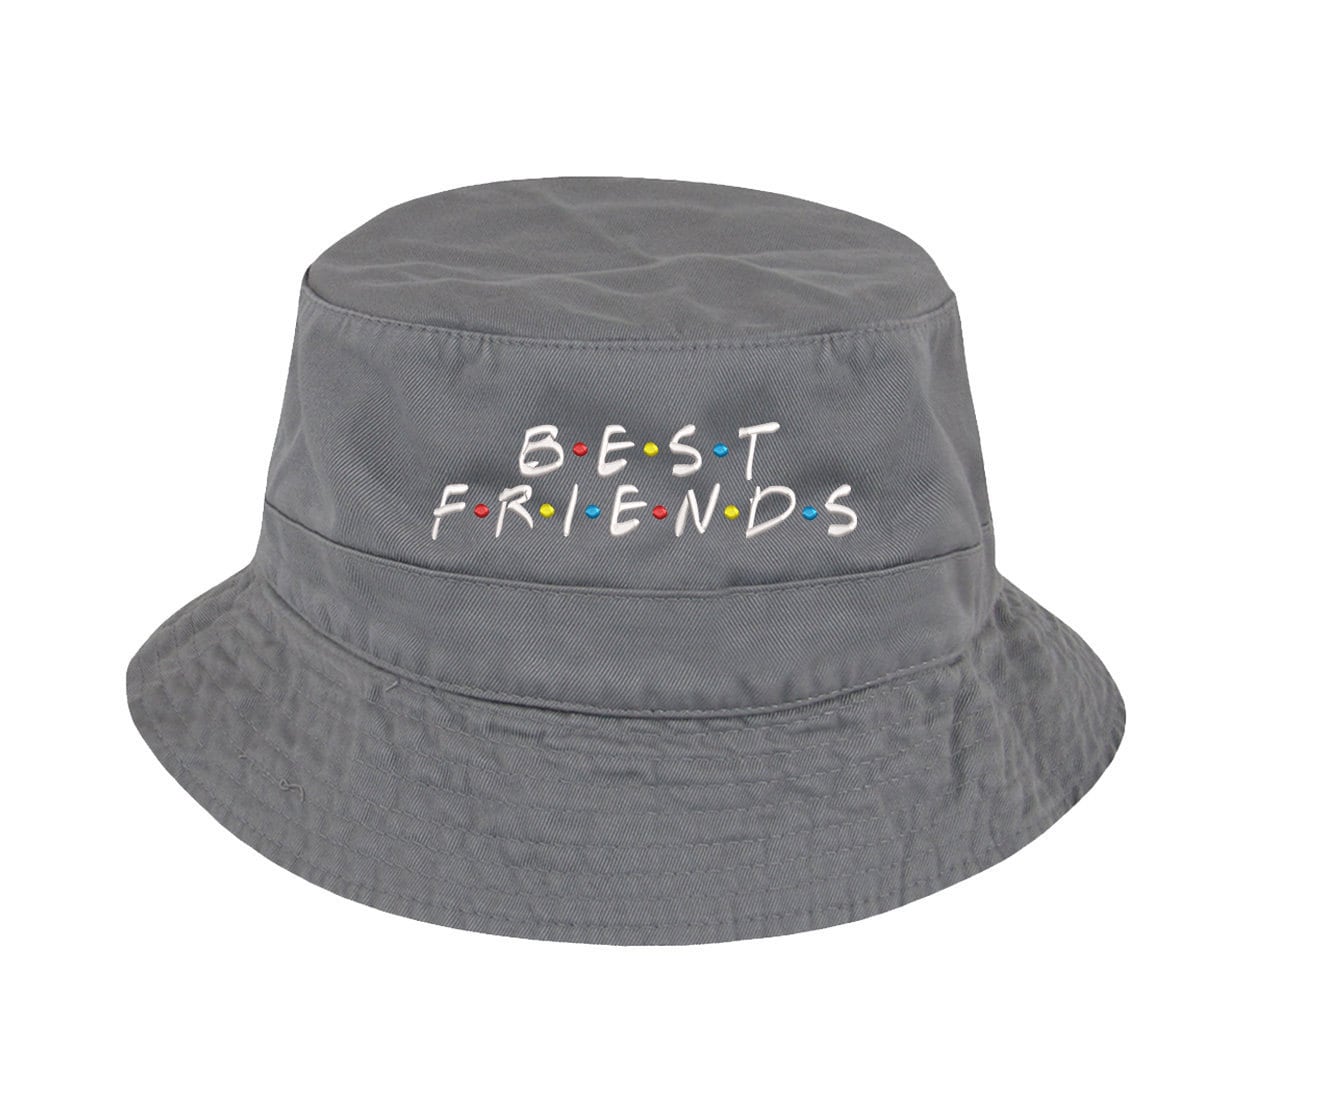 NDFGR Montserrat Unisex Cotton Packable Black Travel Bucket Hat Fishing Cap